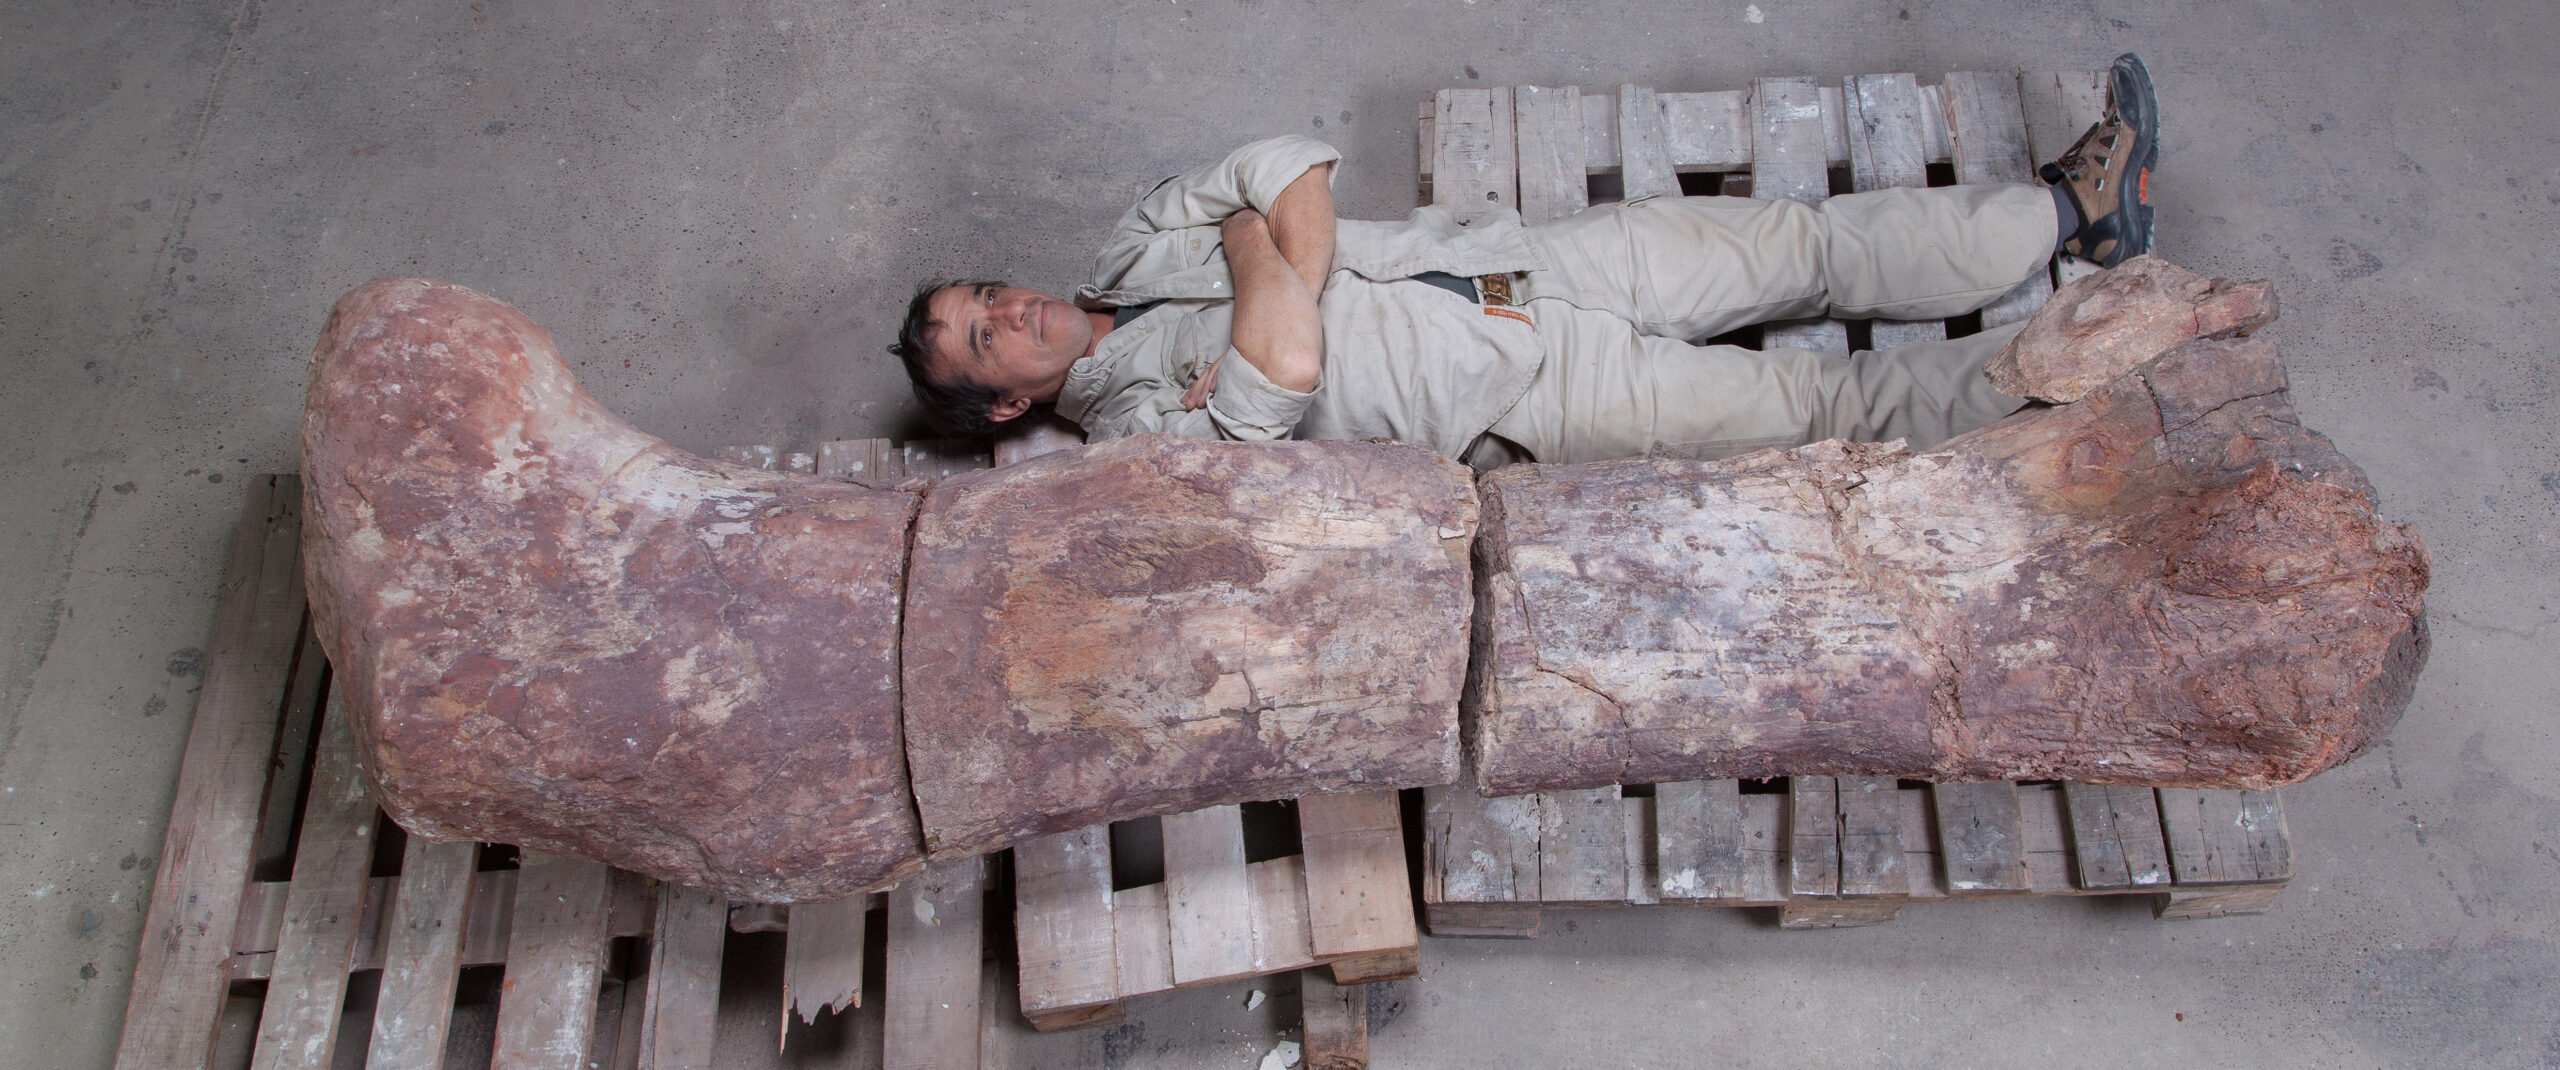 Mostra no Ibirapuera traz fóssil de maior dinossauro do mundo